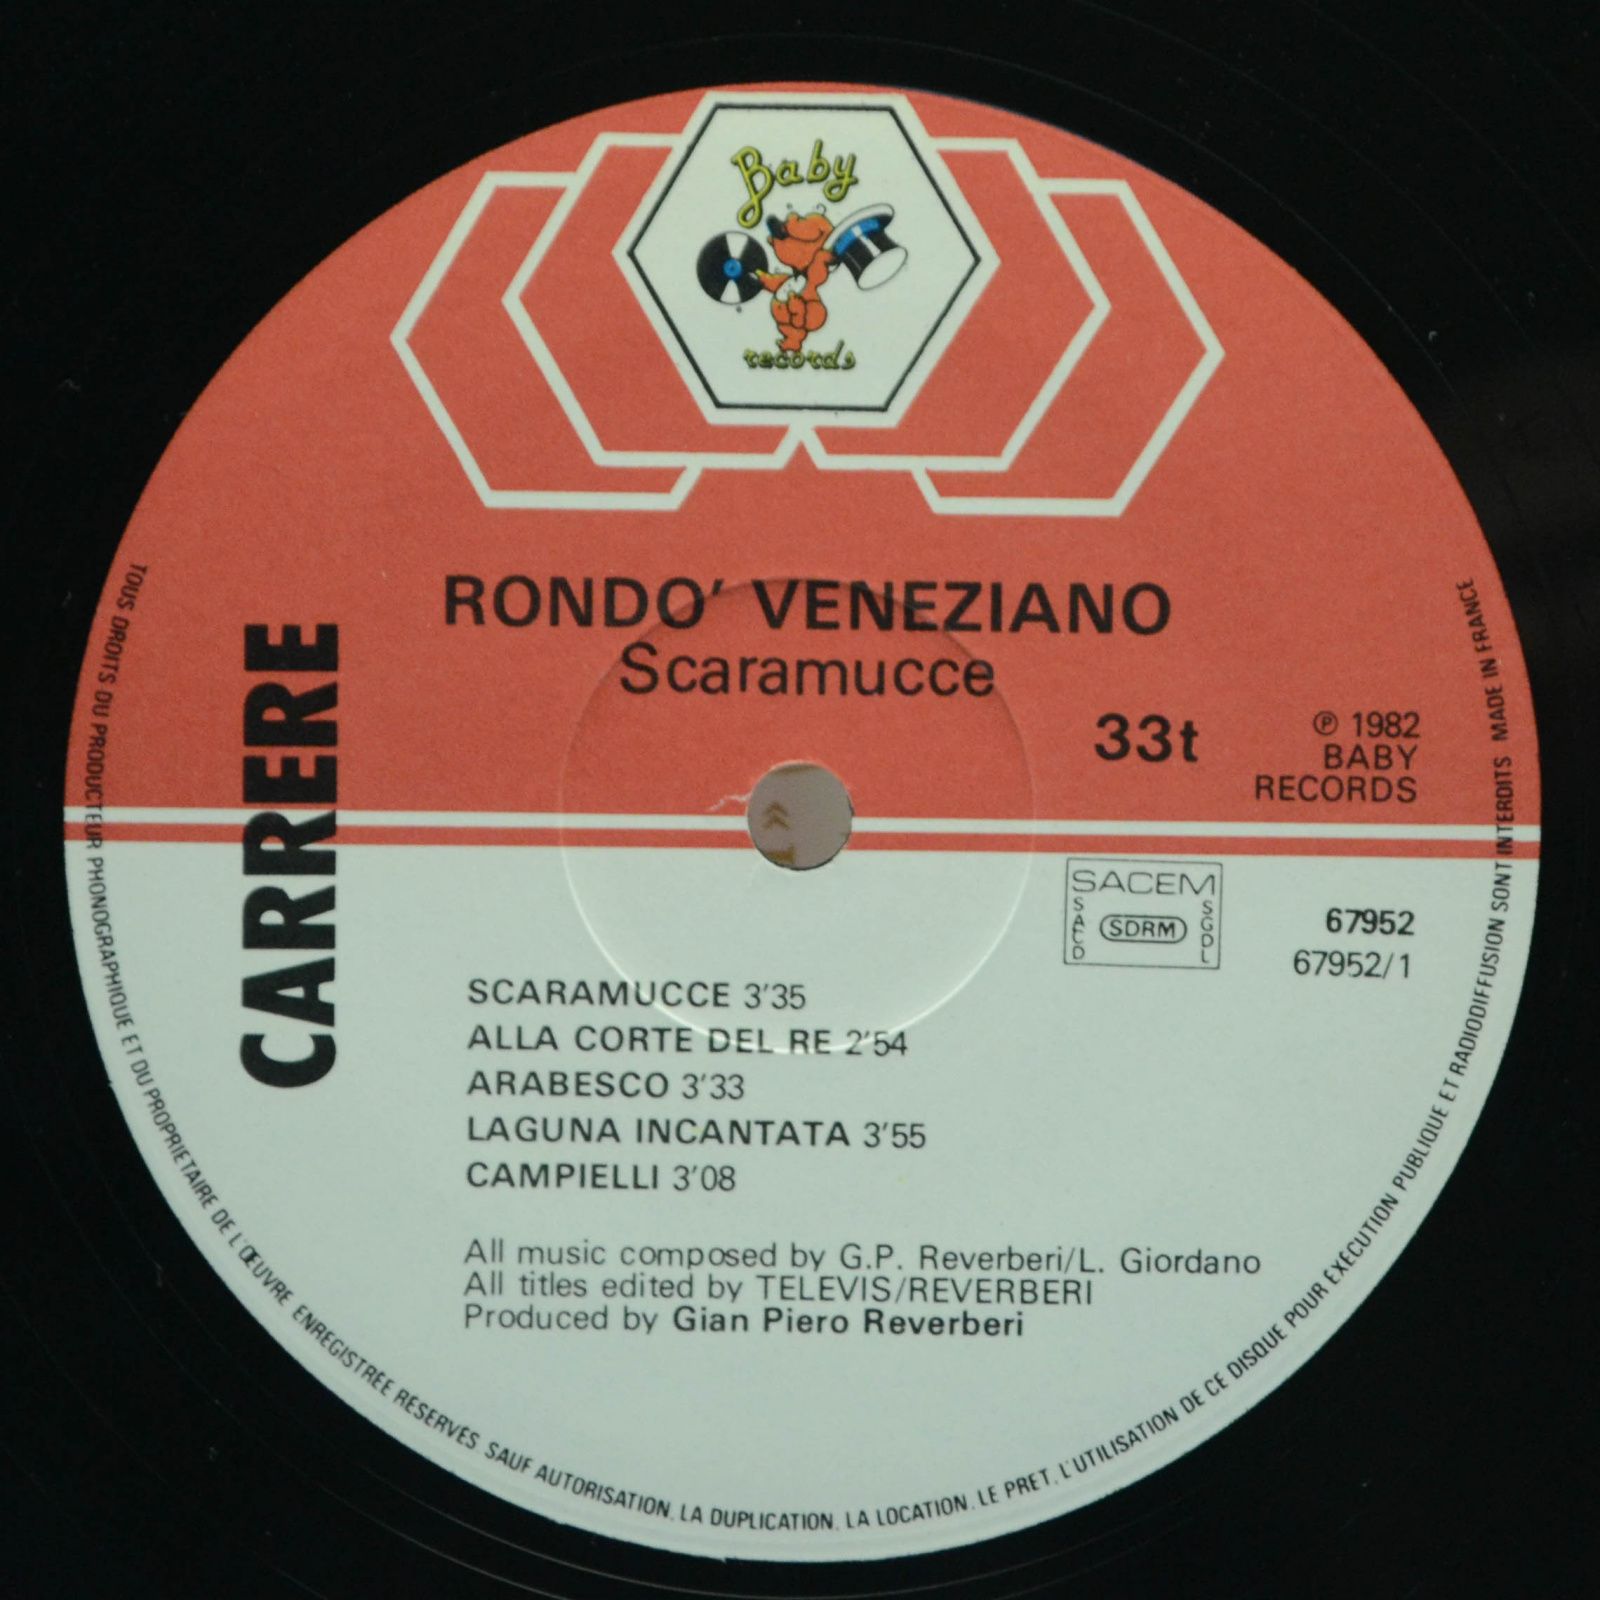 Rondò Veneziano — Scaramucce, 1982